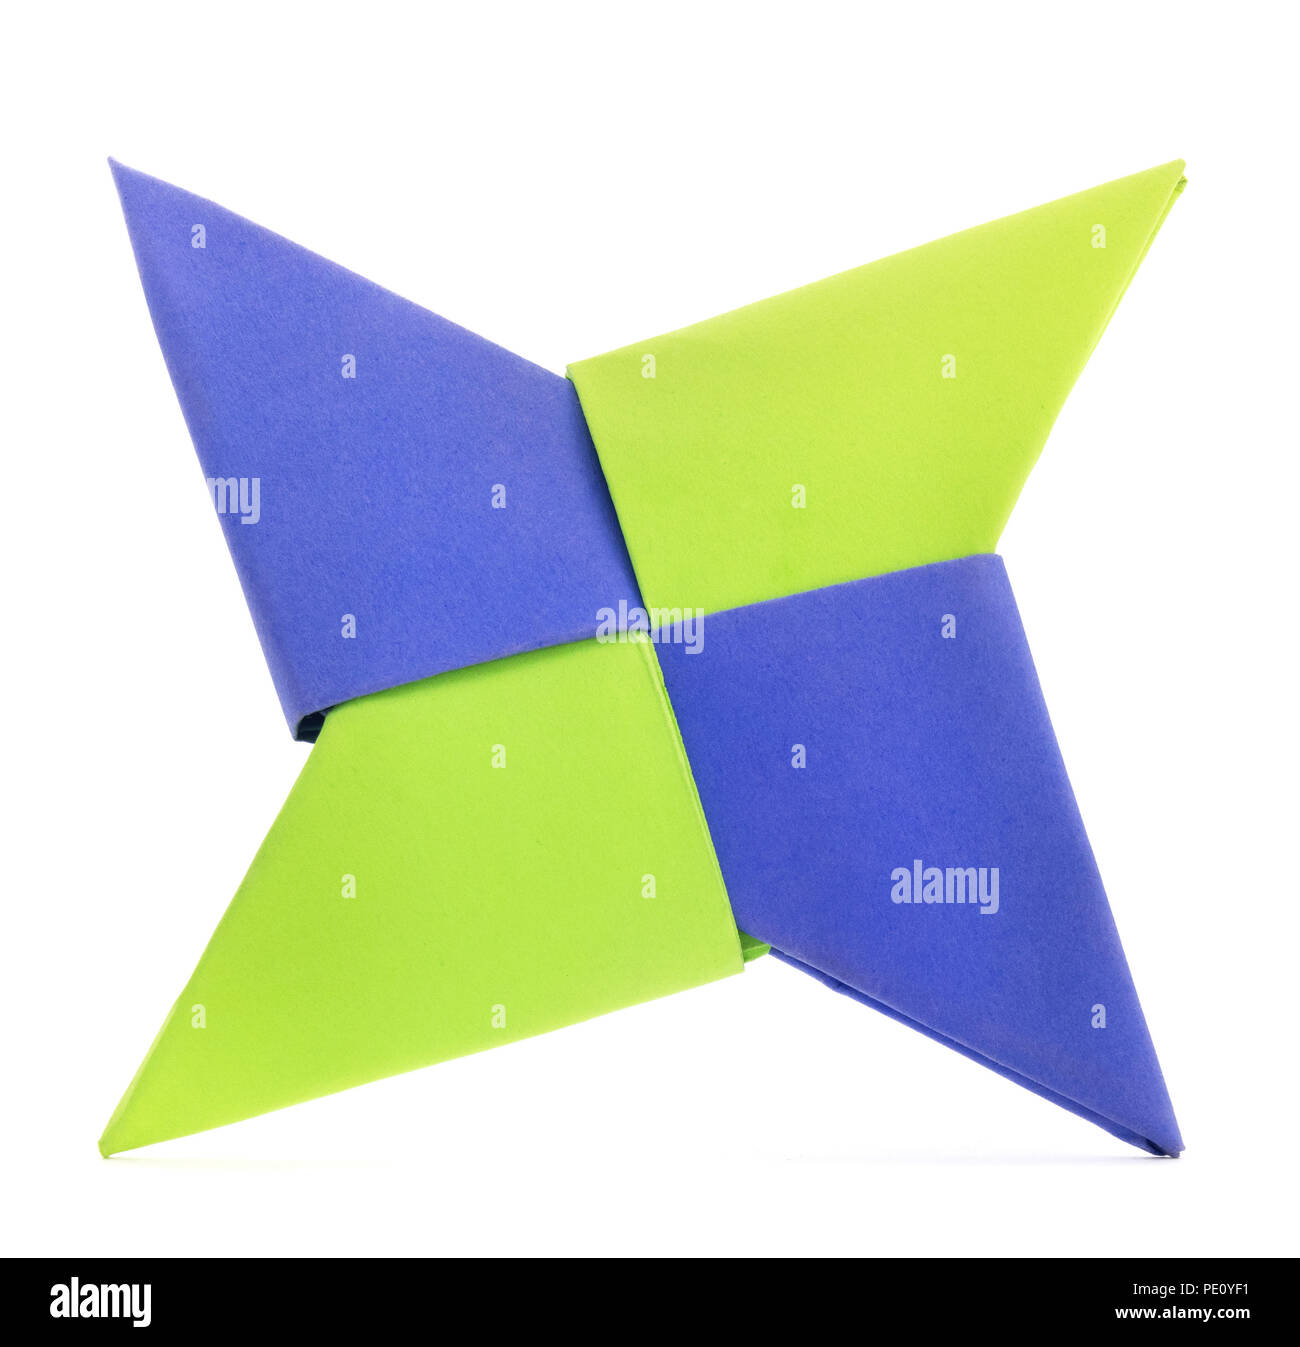 Isolato di carta origami forma a stella piega. Origami forma a